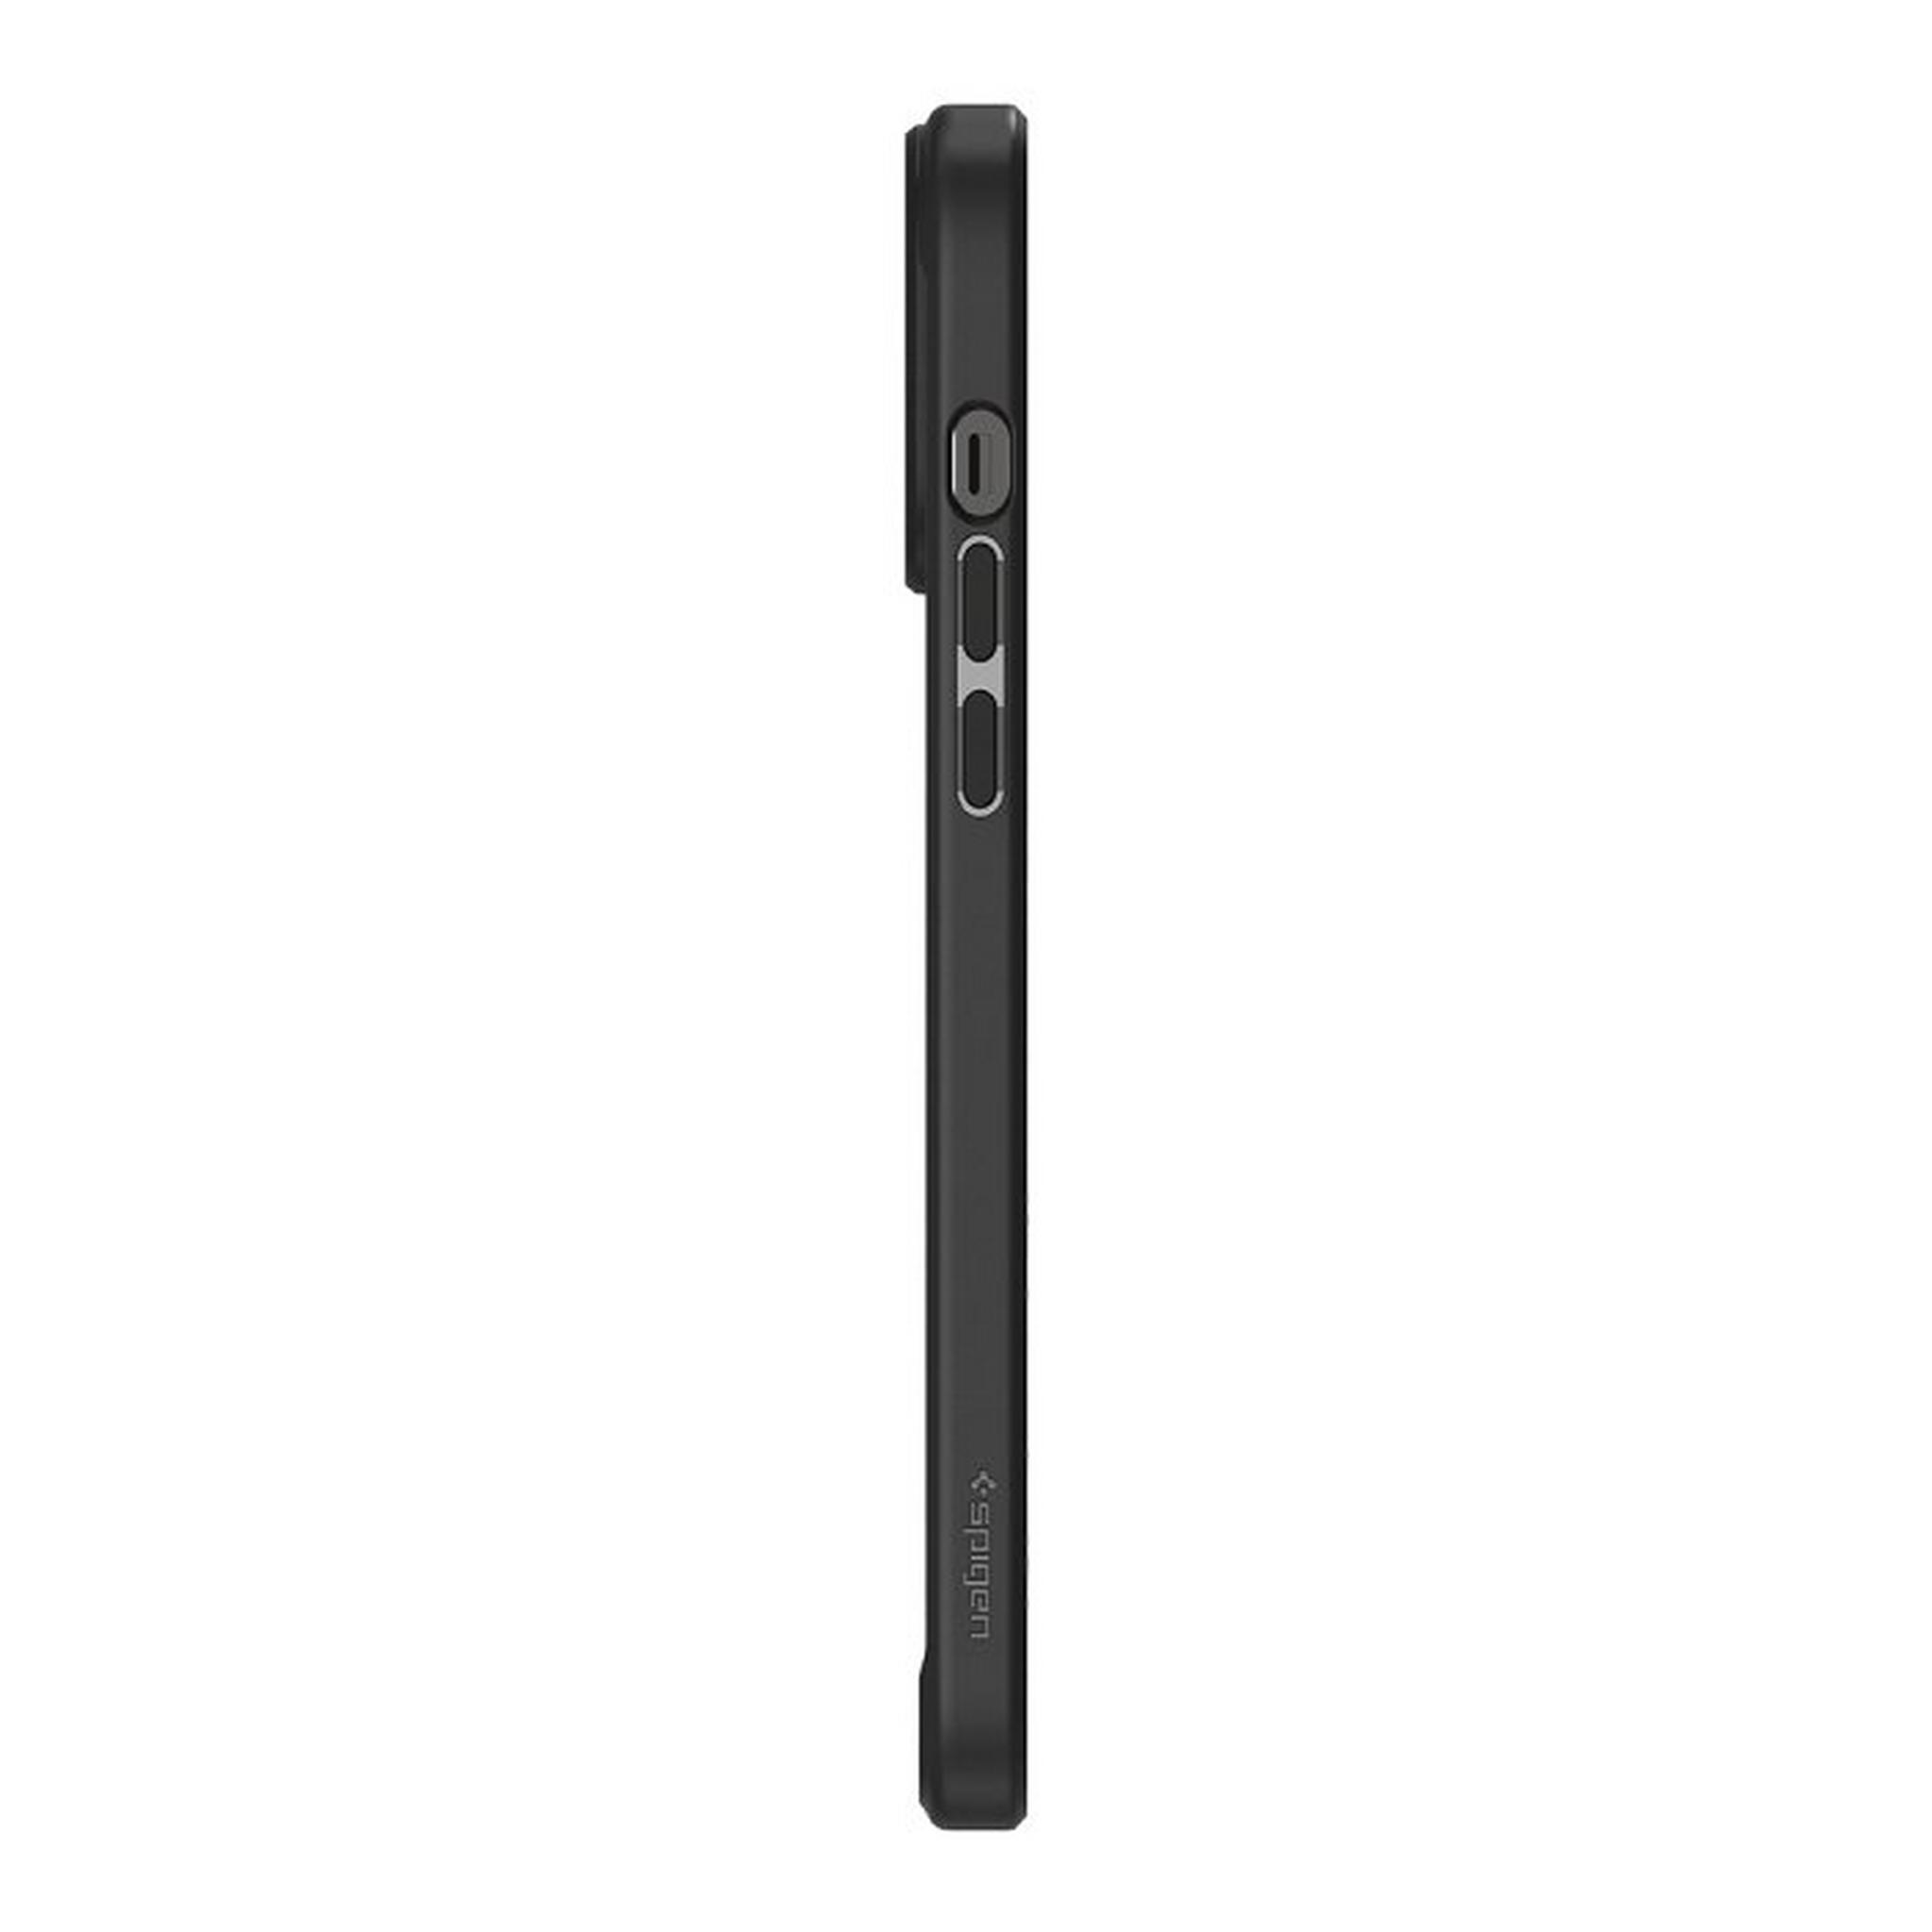 Spigen Apple iPhone 13 Pro Max Crystal Hybrid Case - Matte Black